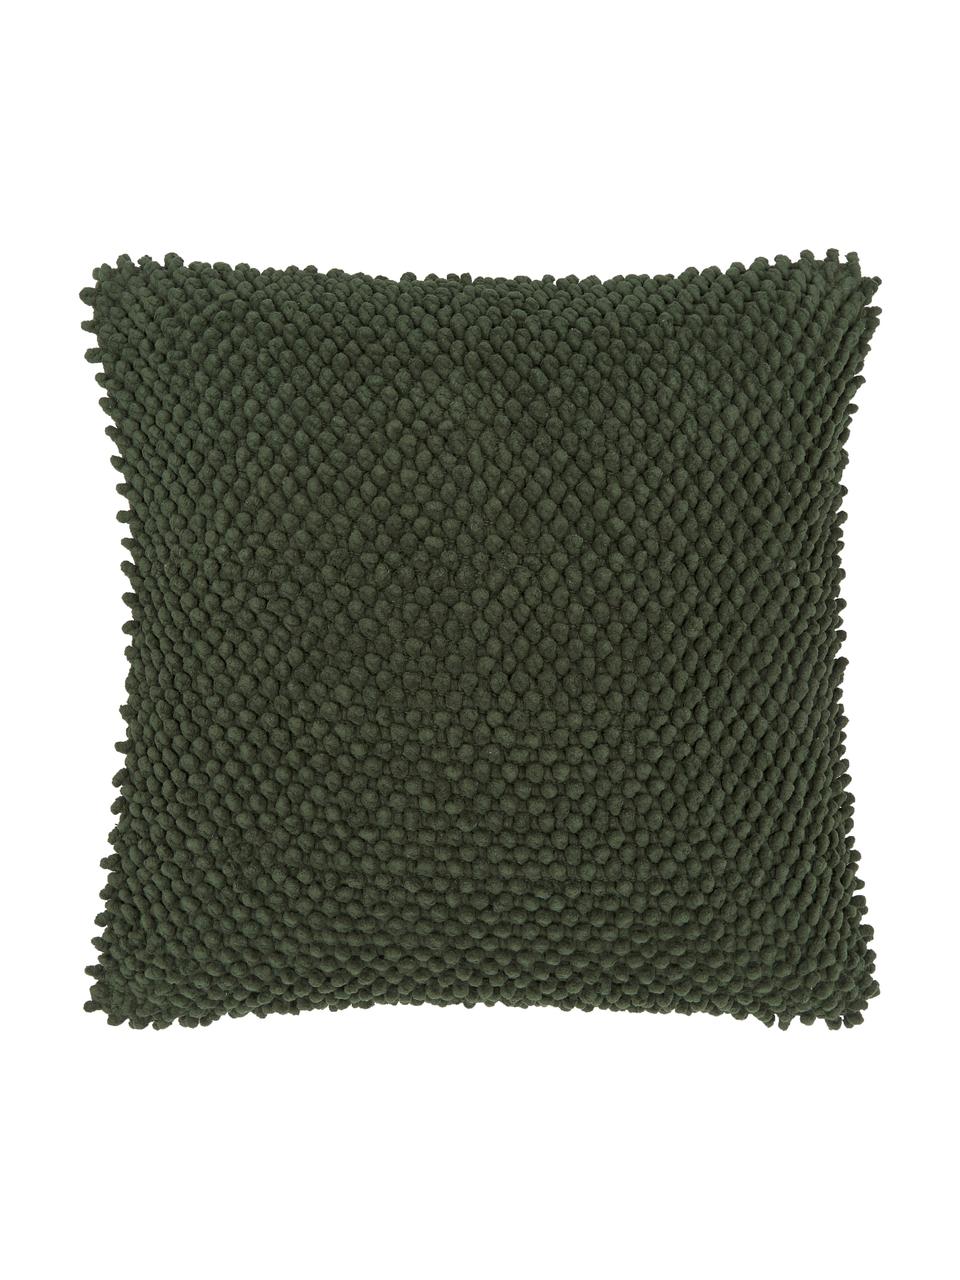 Kissenhülle Indi mit strukturierter Oberfläche in Dunkelgrün, 100% Baumwolle, Dunkelgrün, 45 x 45 cm